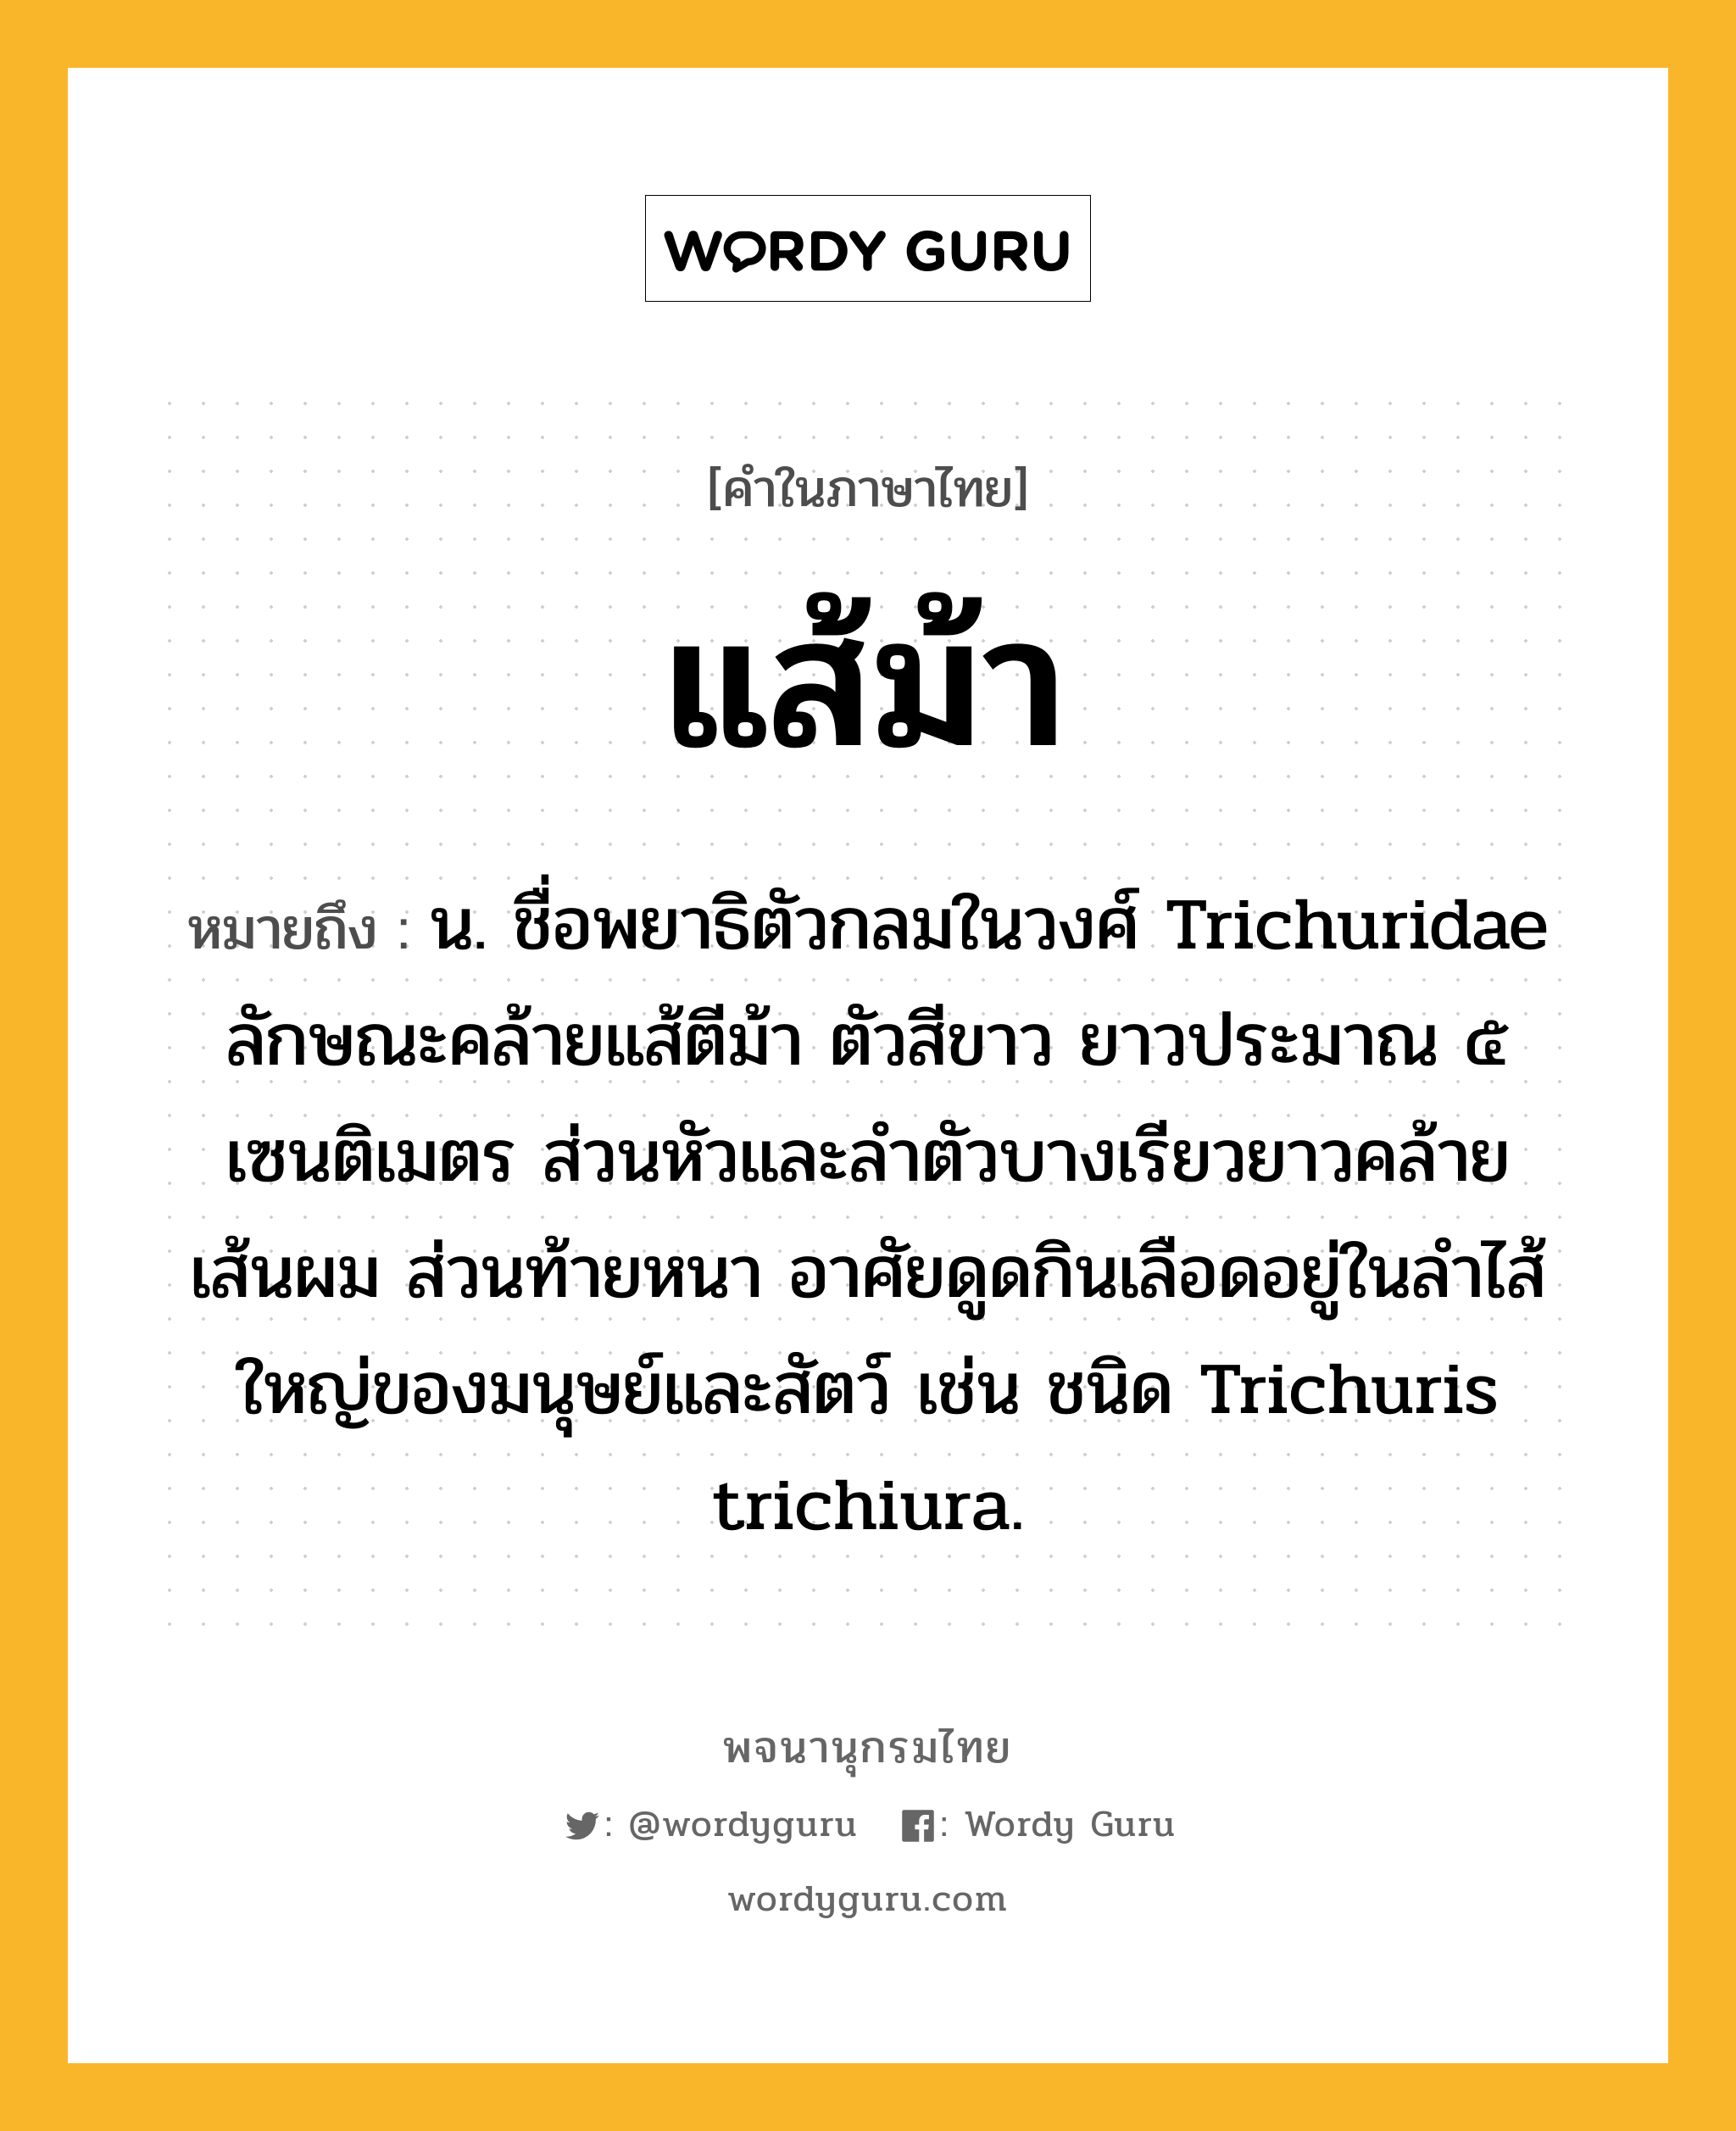 แส้ม้า หมายถึงอะไร?, คำในภาษาไทย แส้ม้า หมายถึง น. ชื่อพยาธิตัวกลมในวงศ์ Trichuridae ลักษณะคล้ายแส้ตีม้า ตัวสีขาว ยาวประมาณ ๕ เซนติเมตร ส่วนหัวและลำตัวบางเรียวยาวคล้ายเส้นผม ส่วนท้ายหนา อาศัยดูดกินเลือดอยู่ในลําไส้ใหญ่ของมนุษย์และสัตว์ เช่น ชนิด Trichuris trichiura.